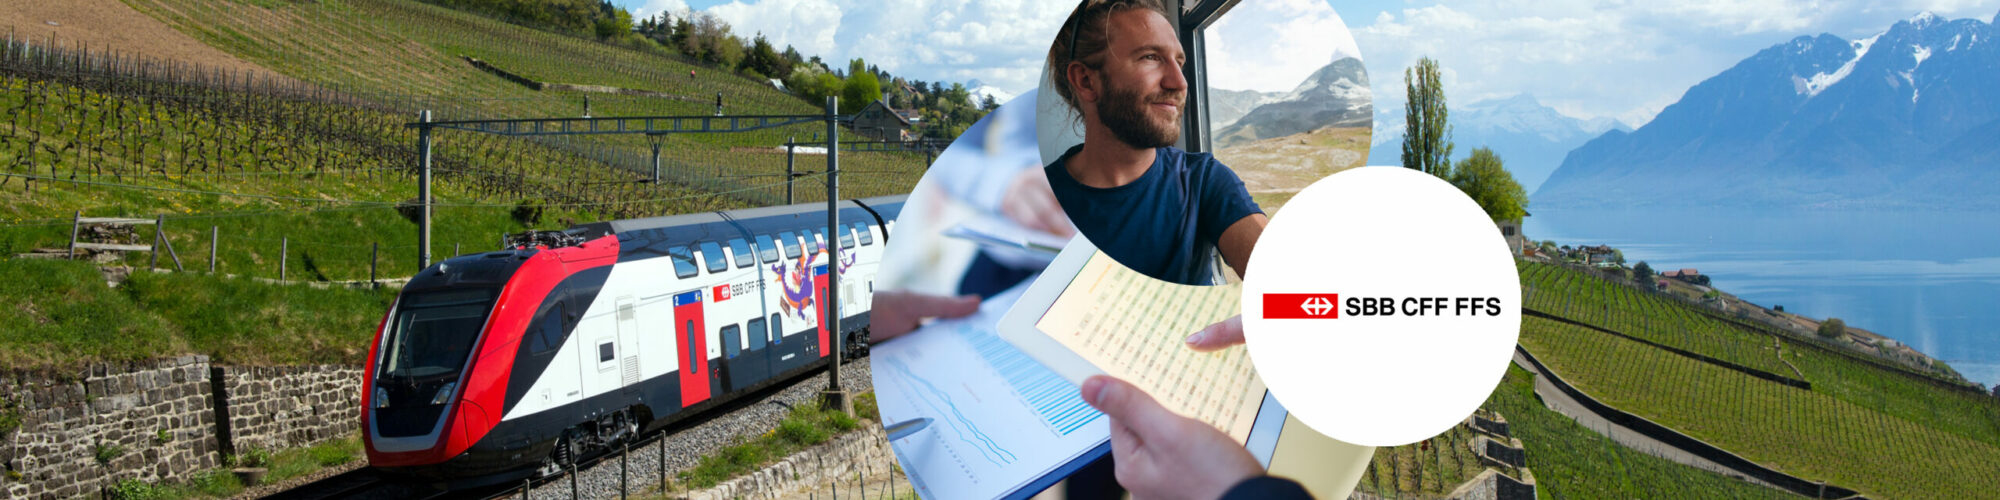 Titelbild der Success Story SBB: im Hintergrund sieht man die einen Zug der Schweizer Bundesbahn, der durch die schweizer Bergwelt fährt, im Vordergrund drei Abbildungen bestehend aus Diagrammen, einem Passagier und dem Logo der SBB | Success Story SBB: Unternehmensplanung mit Anaplan